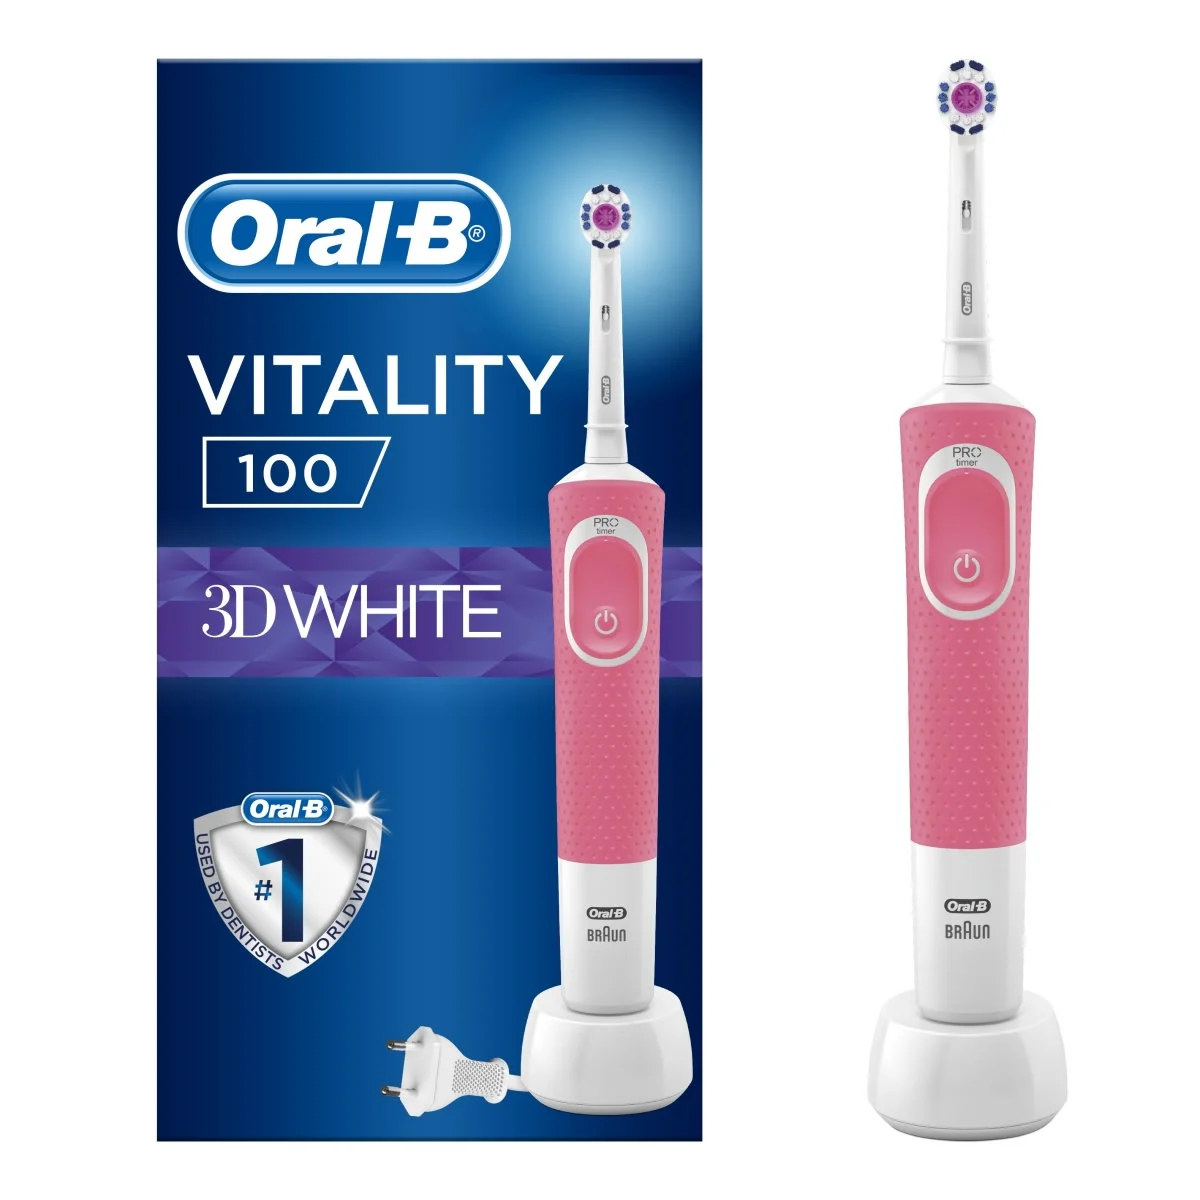 Oral-B Vitality 100 3D White Pembe Şarj Edilebilir Diş Fırçası 